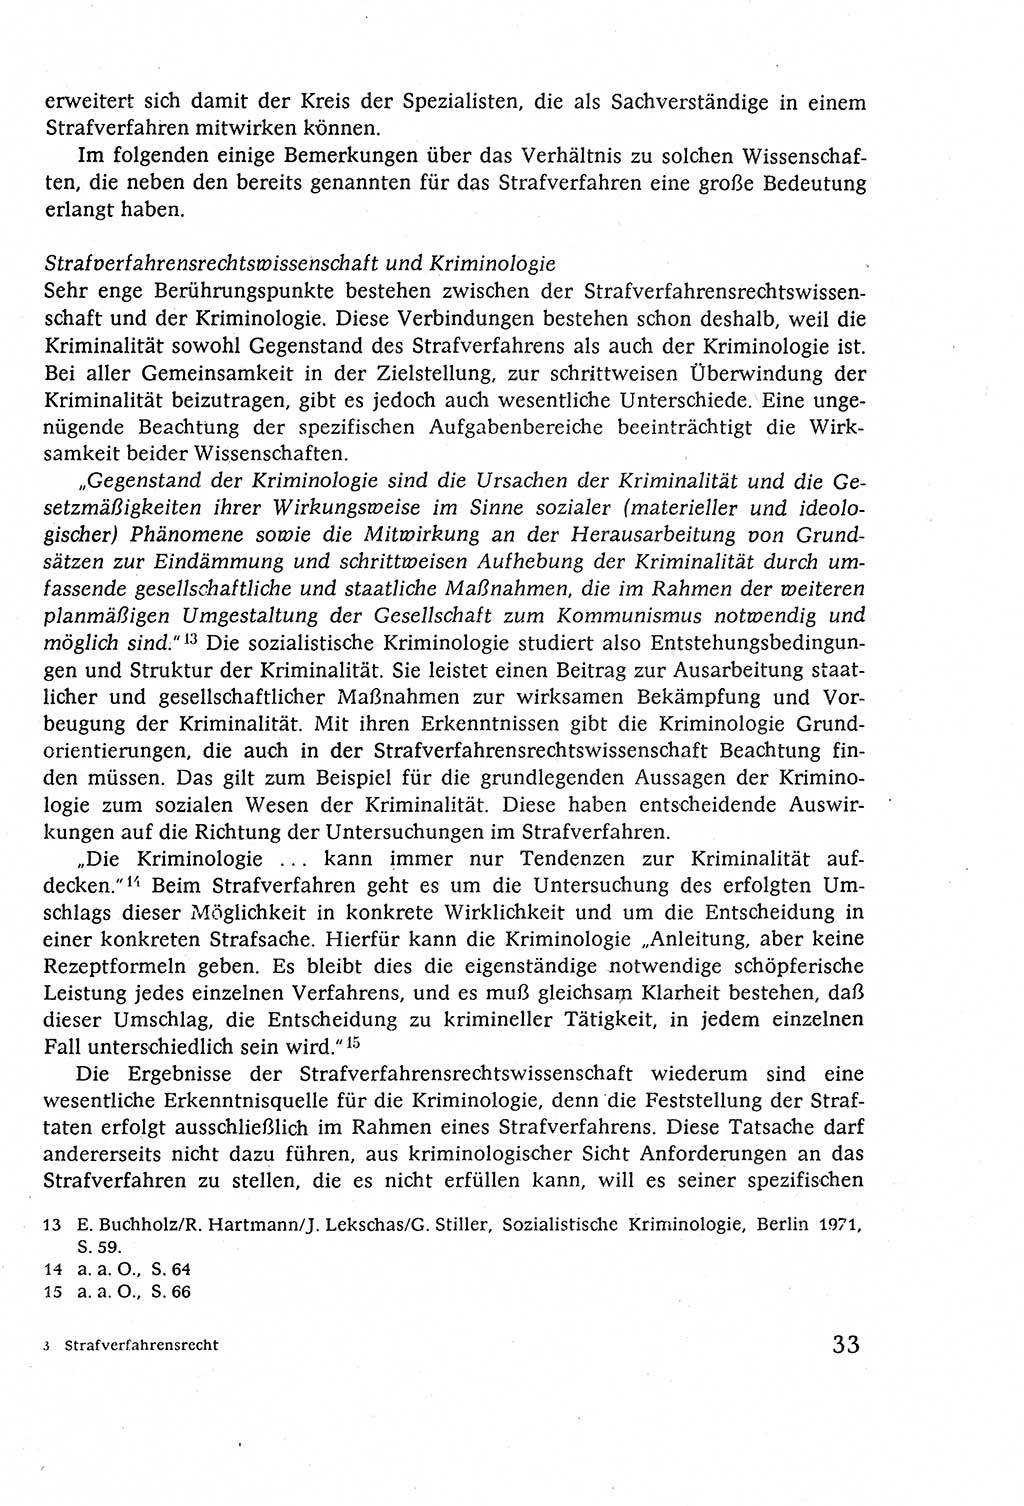 Strafverfahrensrecht [Deutsche Demokratische Republik (DDR)], Lehrbuch 1977, Seite 33 (Strafverf.-R. DDR Lb. 1977, S. 33)